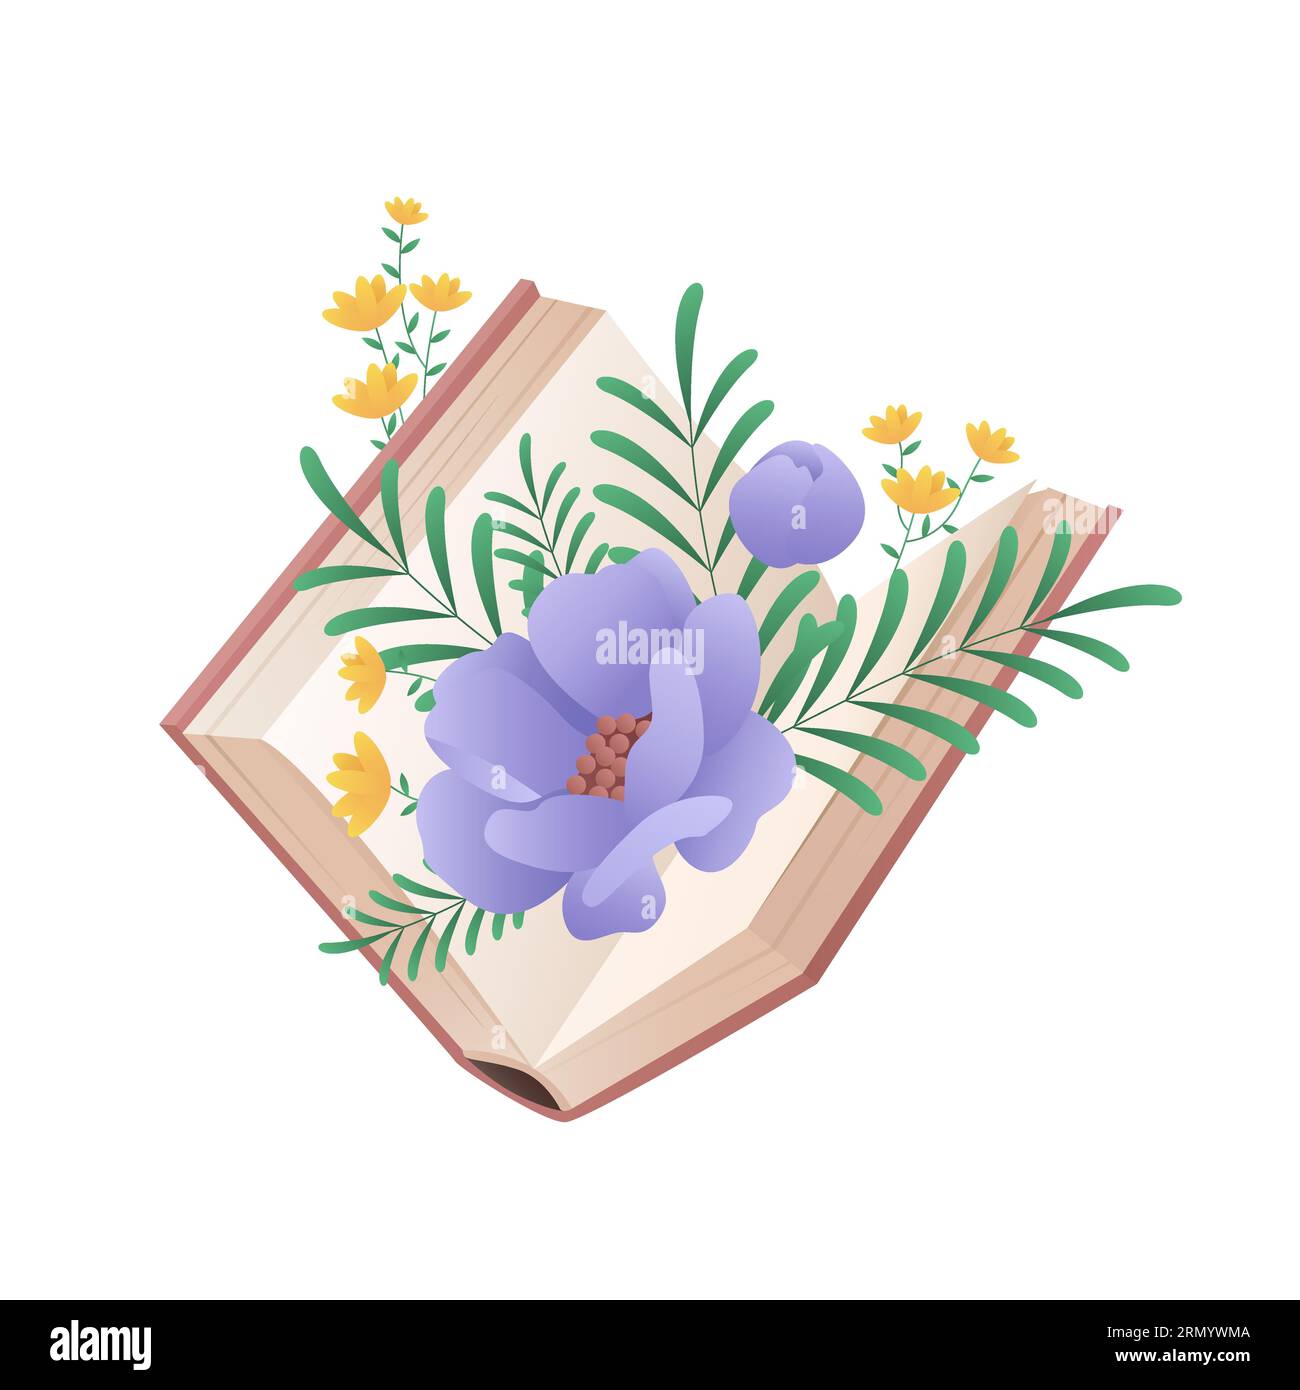 Livre ouvert avec fleur violette fleurie. Amour de la littérature, acquisition de connaissances illustration vectorielle de dessin animé Illustration de Vecteur